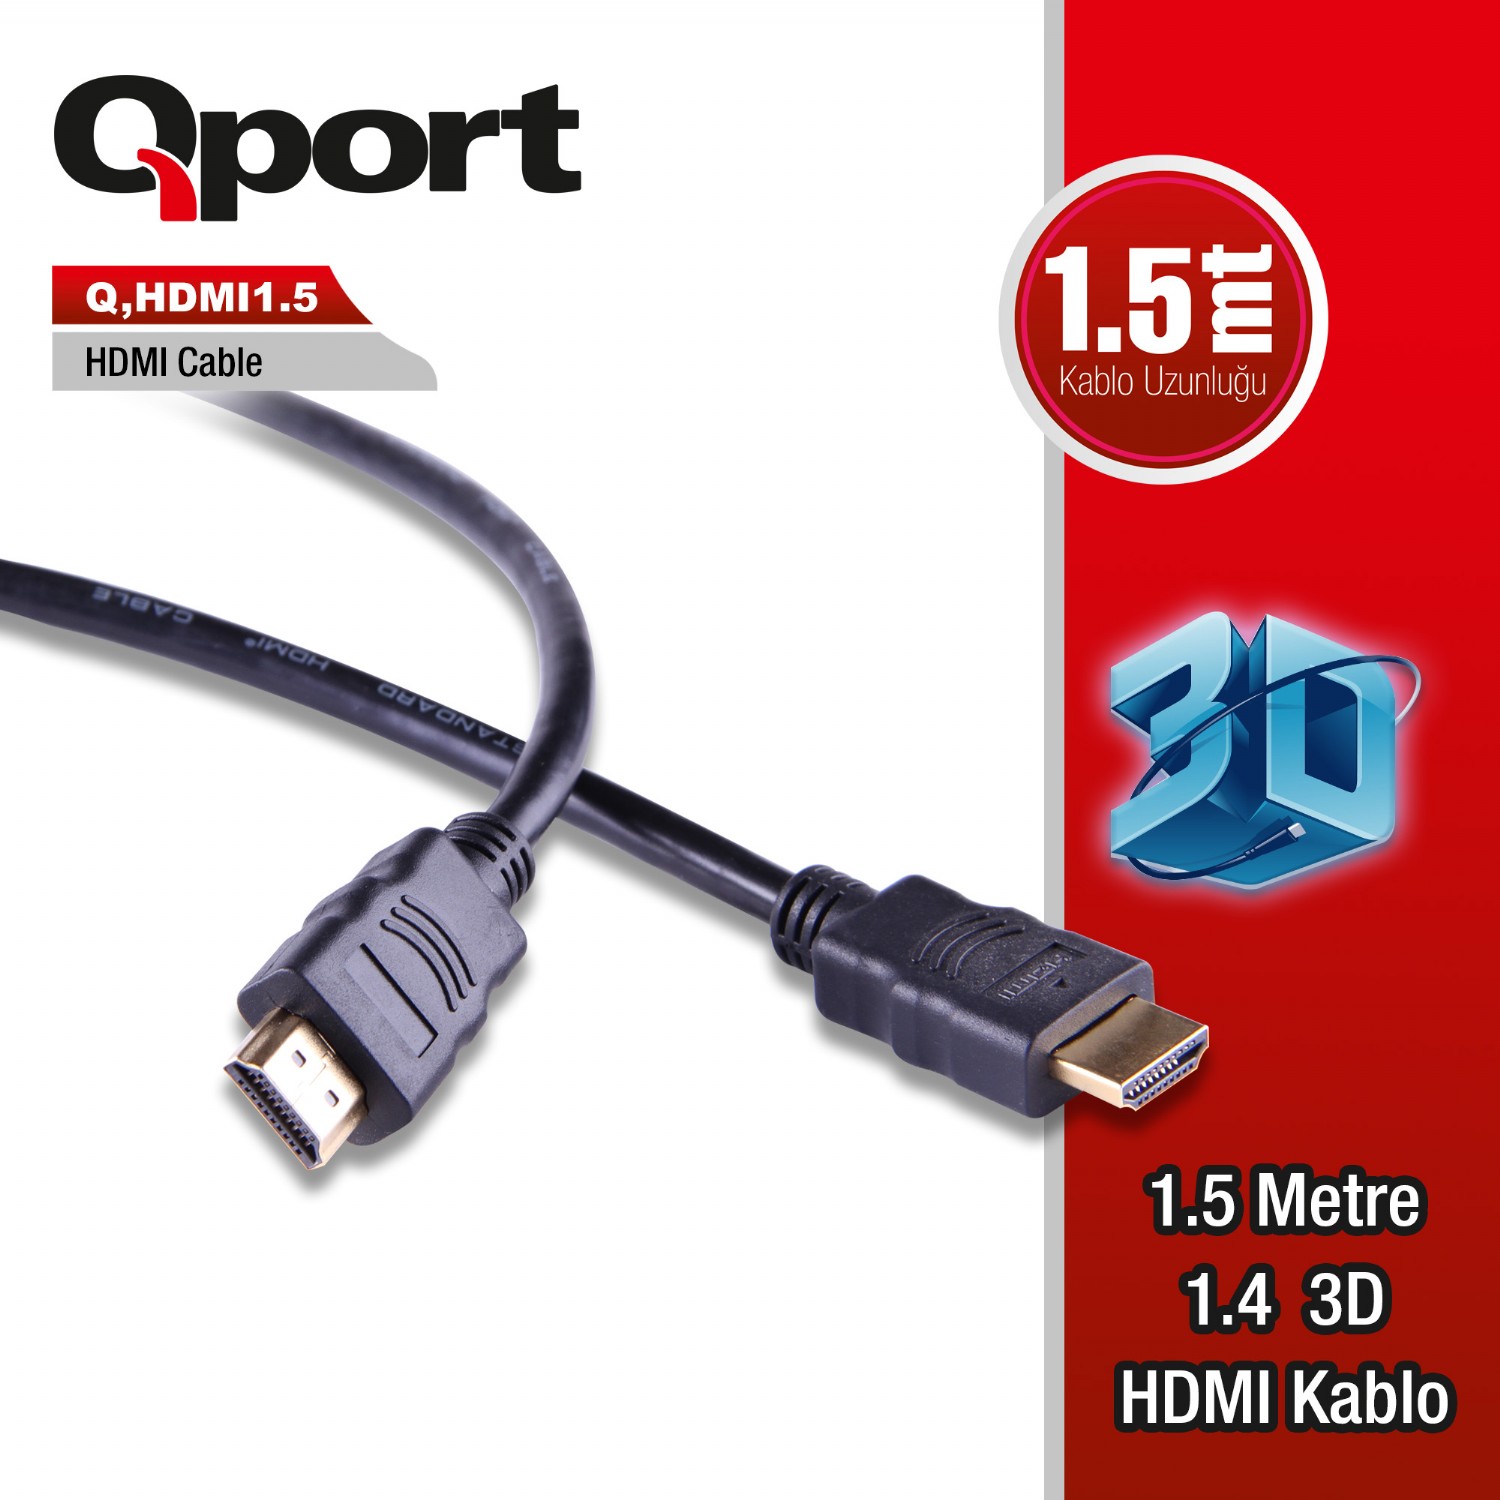 Q-HDMI1.5